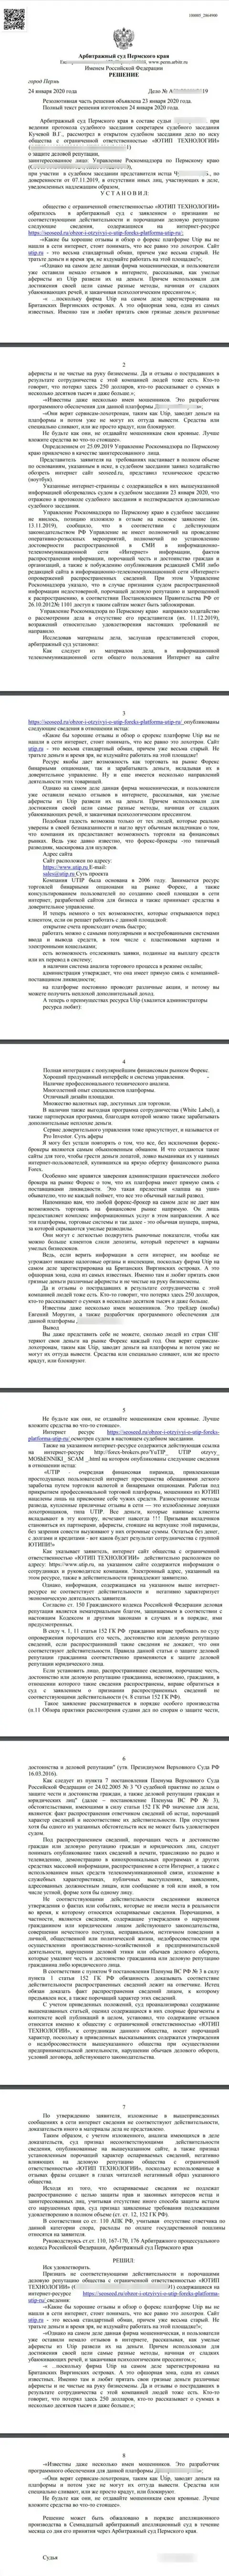 Исковое заявление мошенников UTIP Ru в адрес веб-ресурса СеоСид Ру, удовлетворенный самым справедливым судом в мире